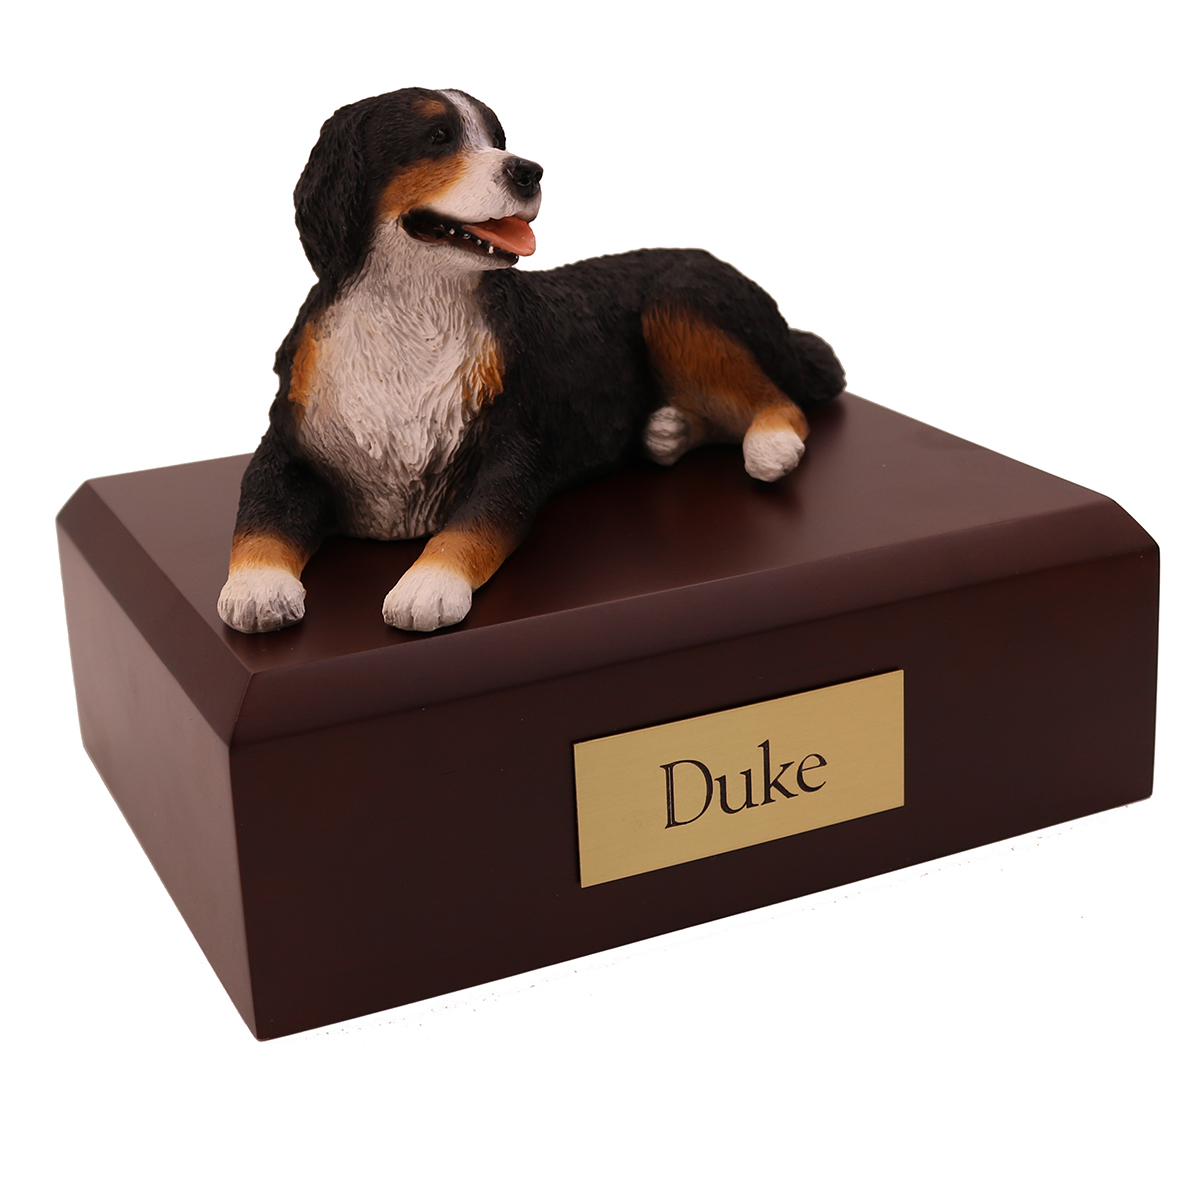 Dog, Bernese Mountain Dog - Figurine Urn